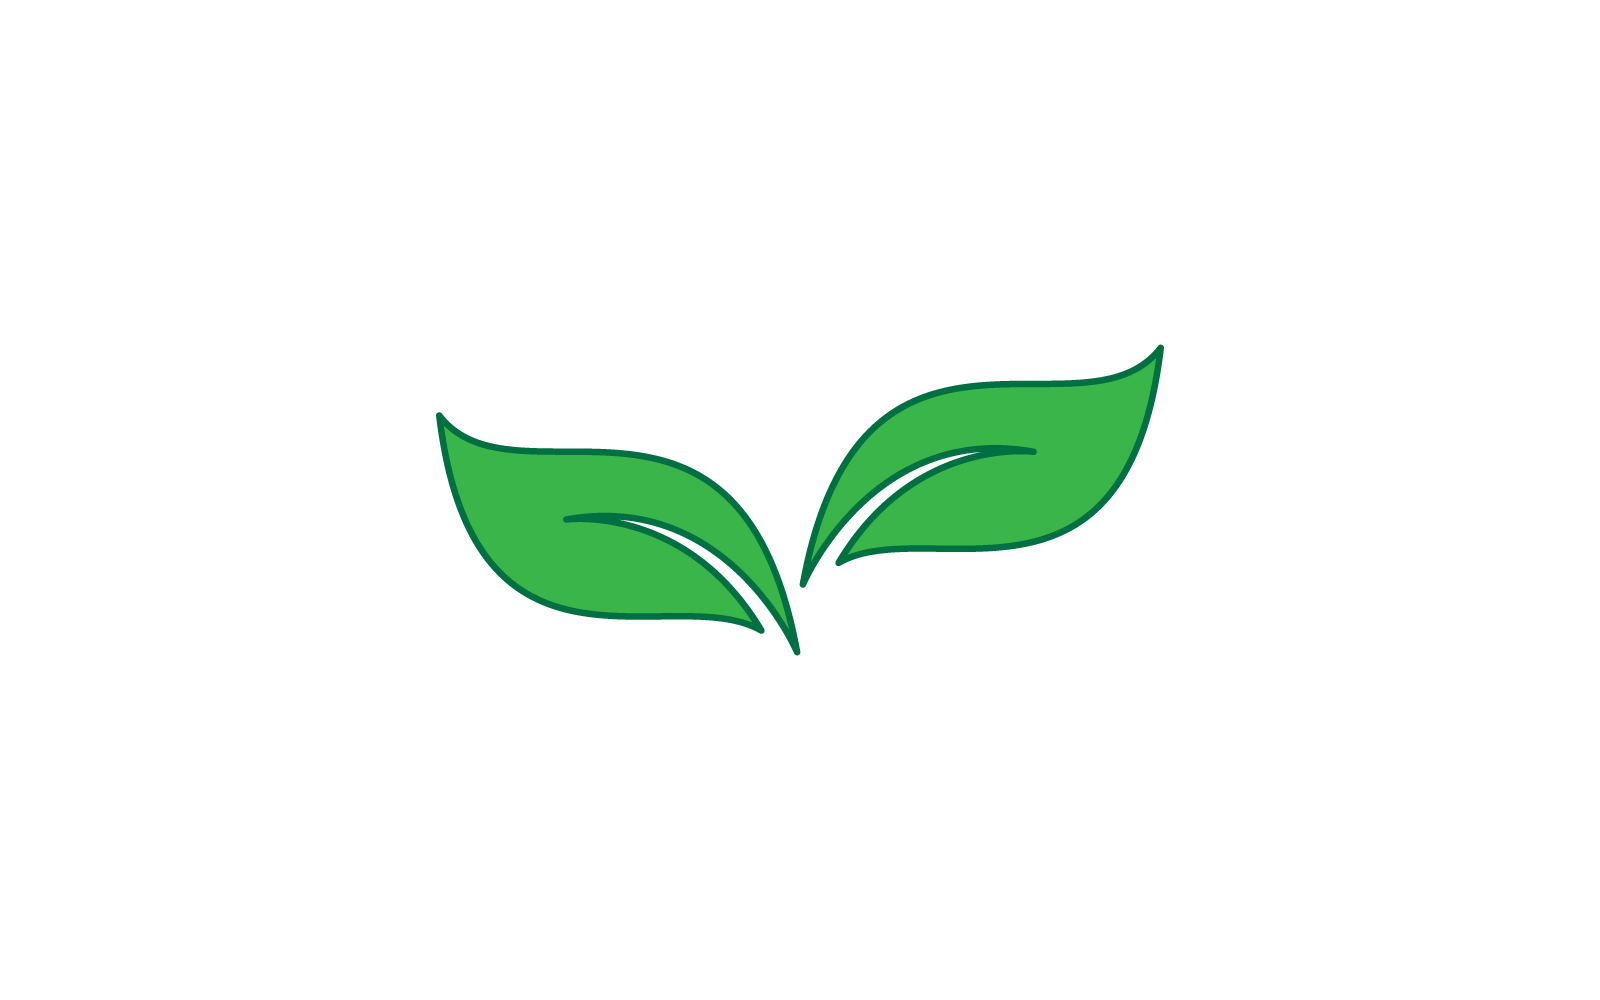 Green leaf logo illustration nature template design